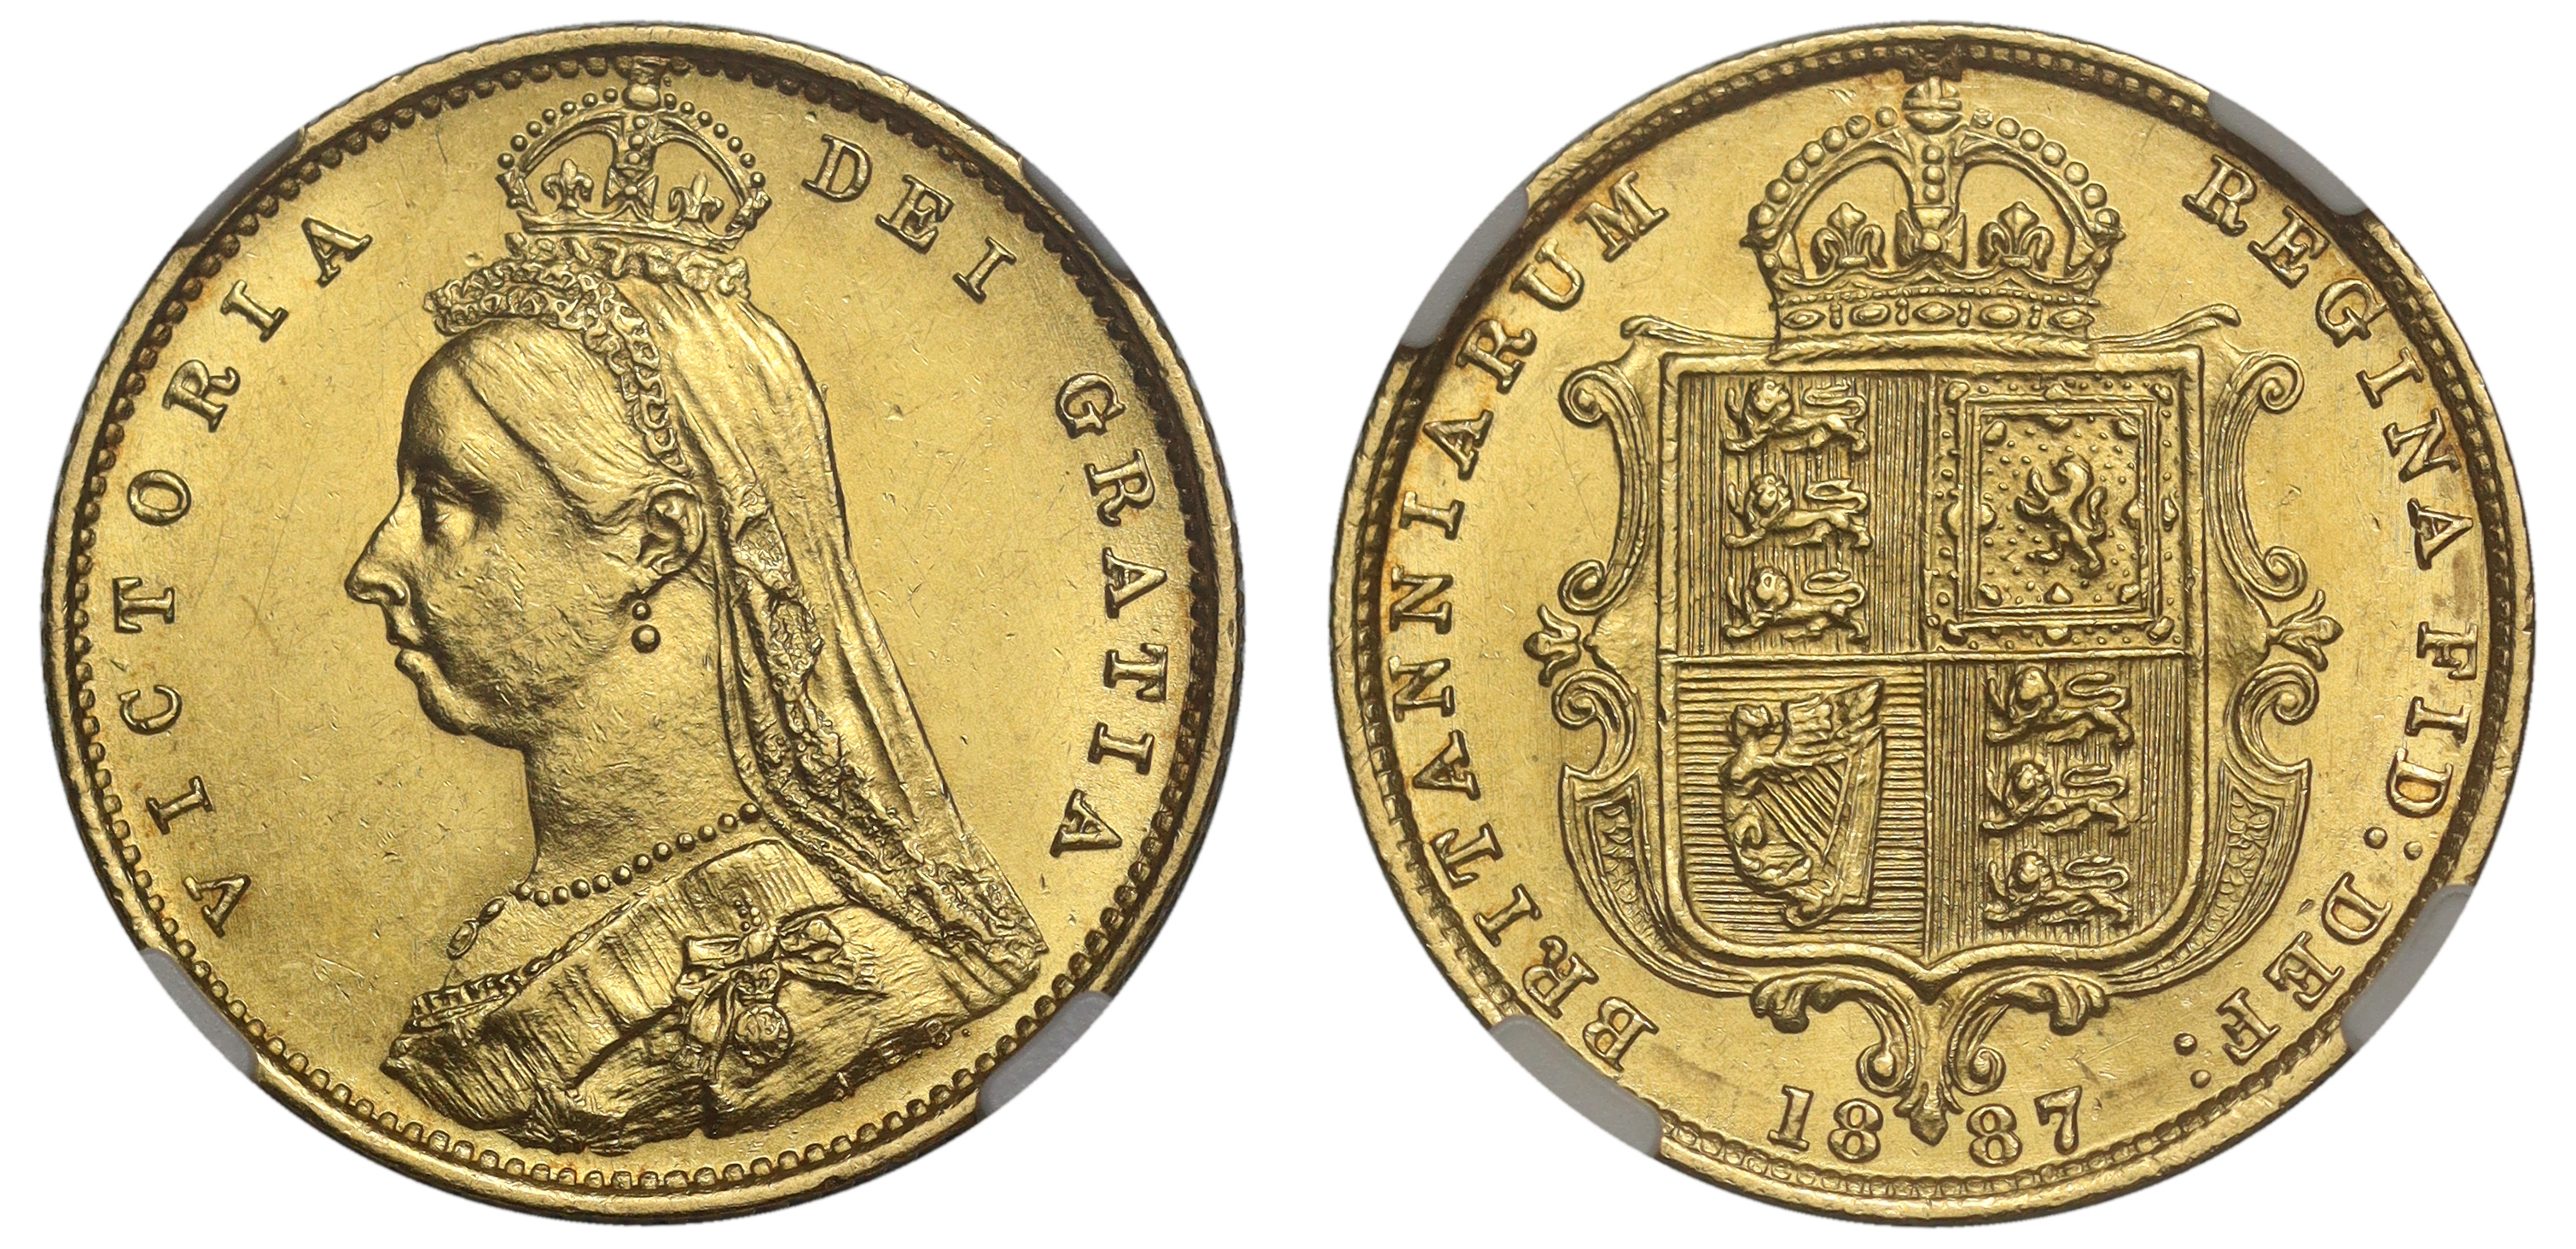 g Victoria (1837-1901), gold Half Sovereign, 1887, Jubilee bust left, J.E.B. on truncation for